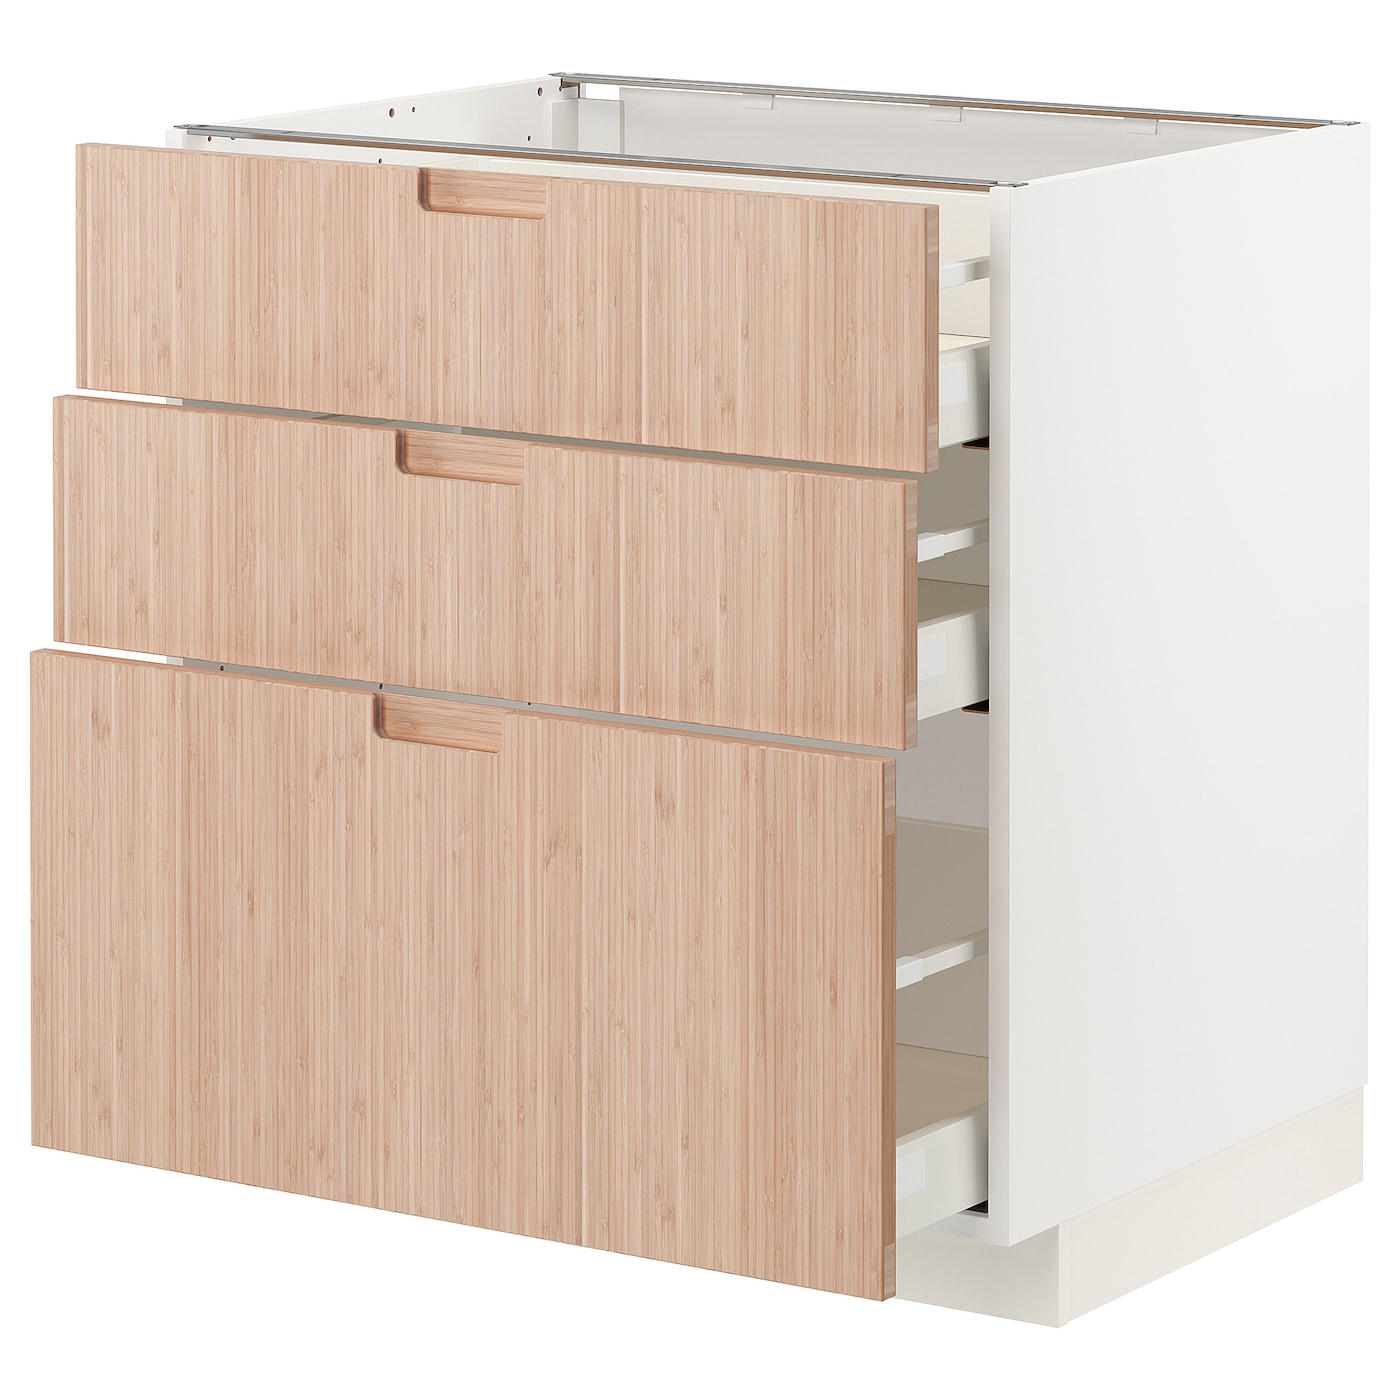 Напольный шкаф - METOD / MAXIMERA IKEA/ МЕТОД/ МАКСИМЕРА ИКЕА,  88х80 см, белый/под беленый дуб